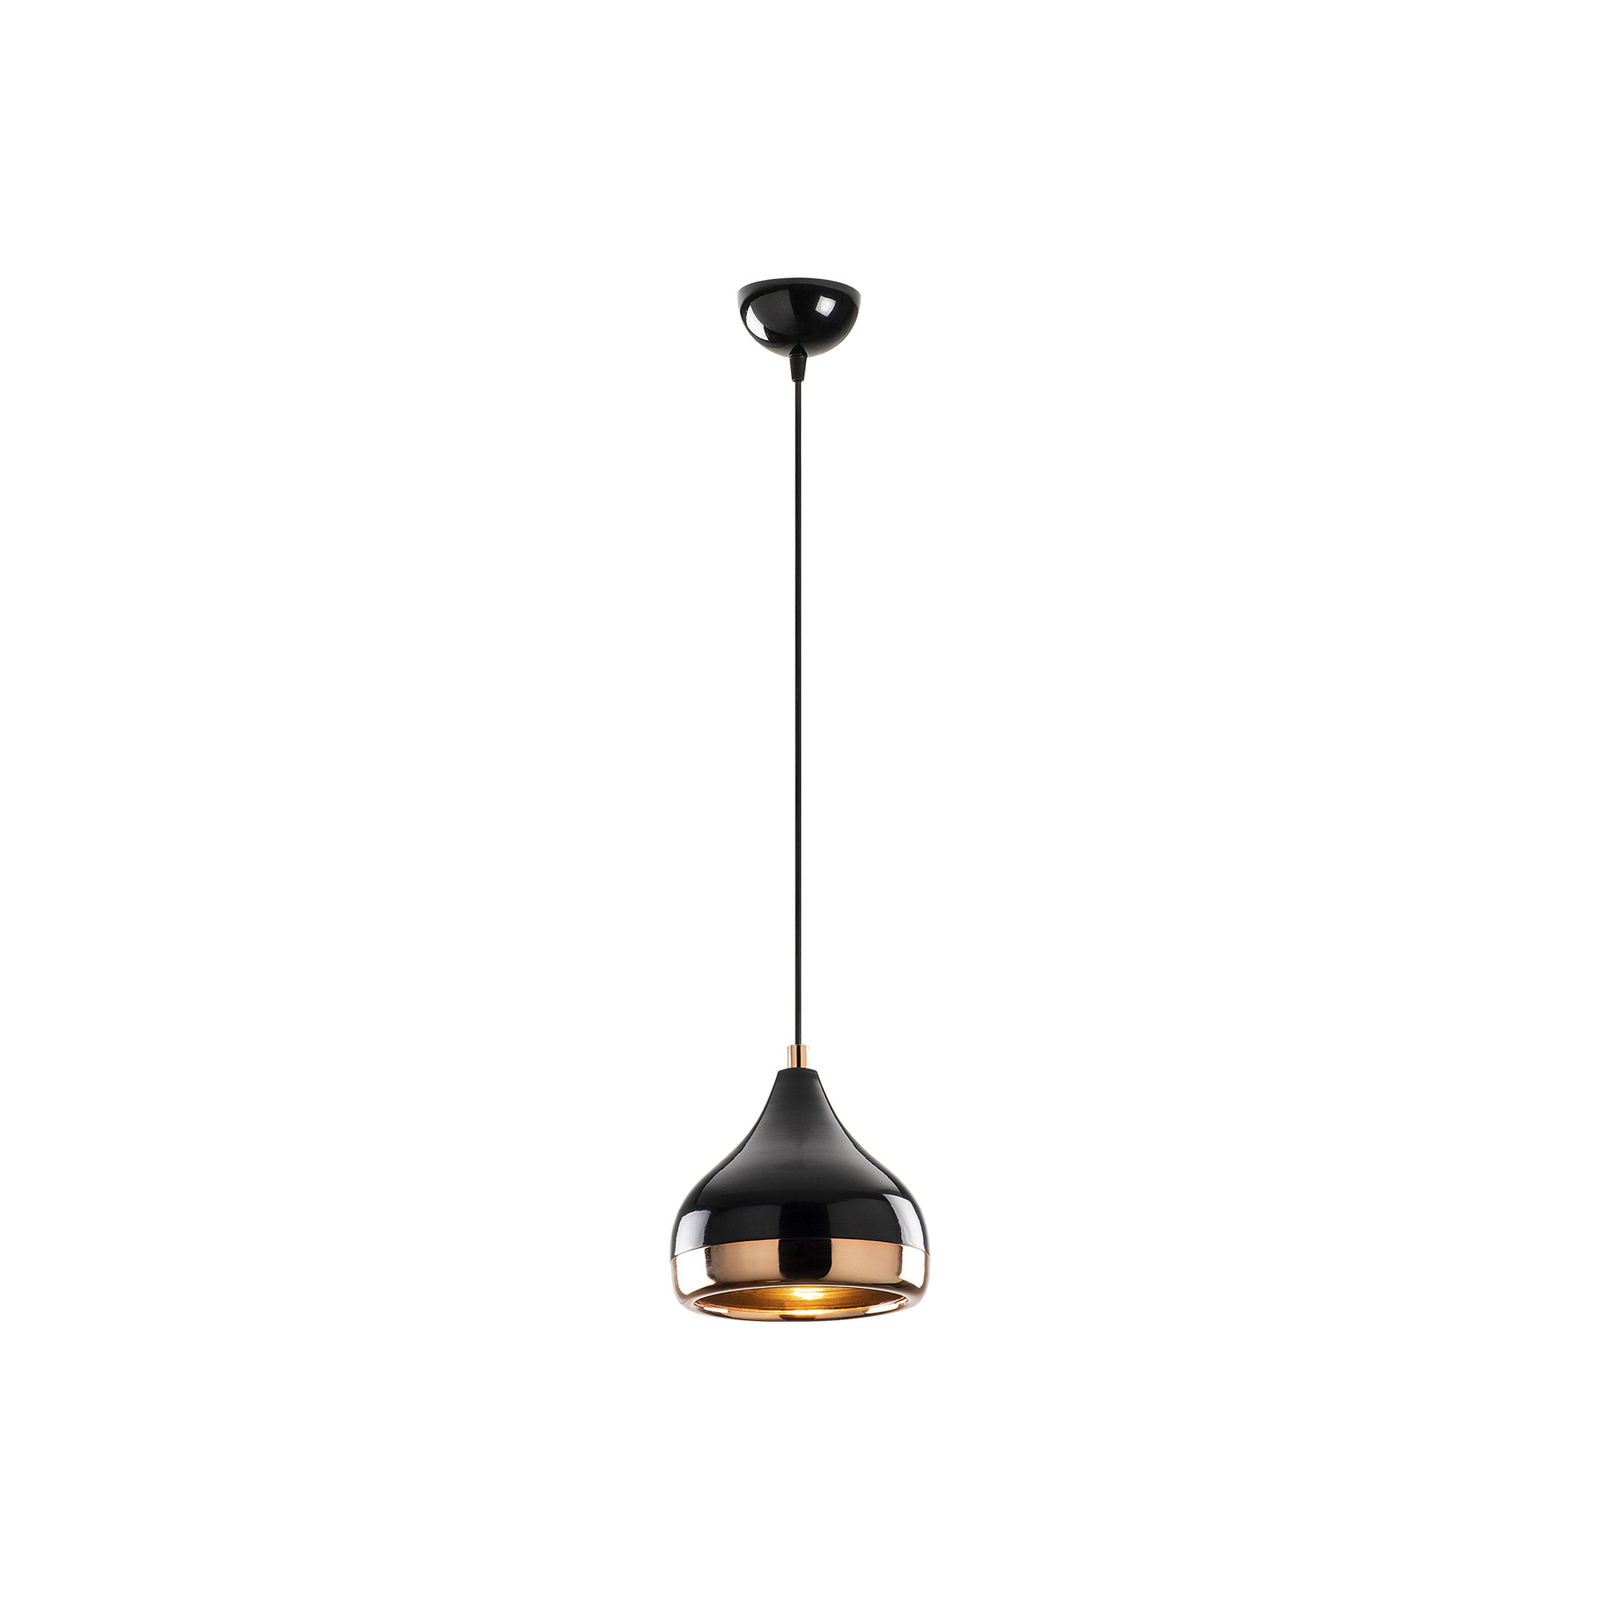 Hanglamp Yildo 6866 1-lamp Ø17cm zwart/koper